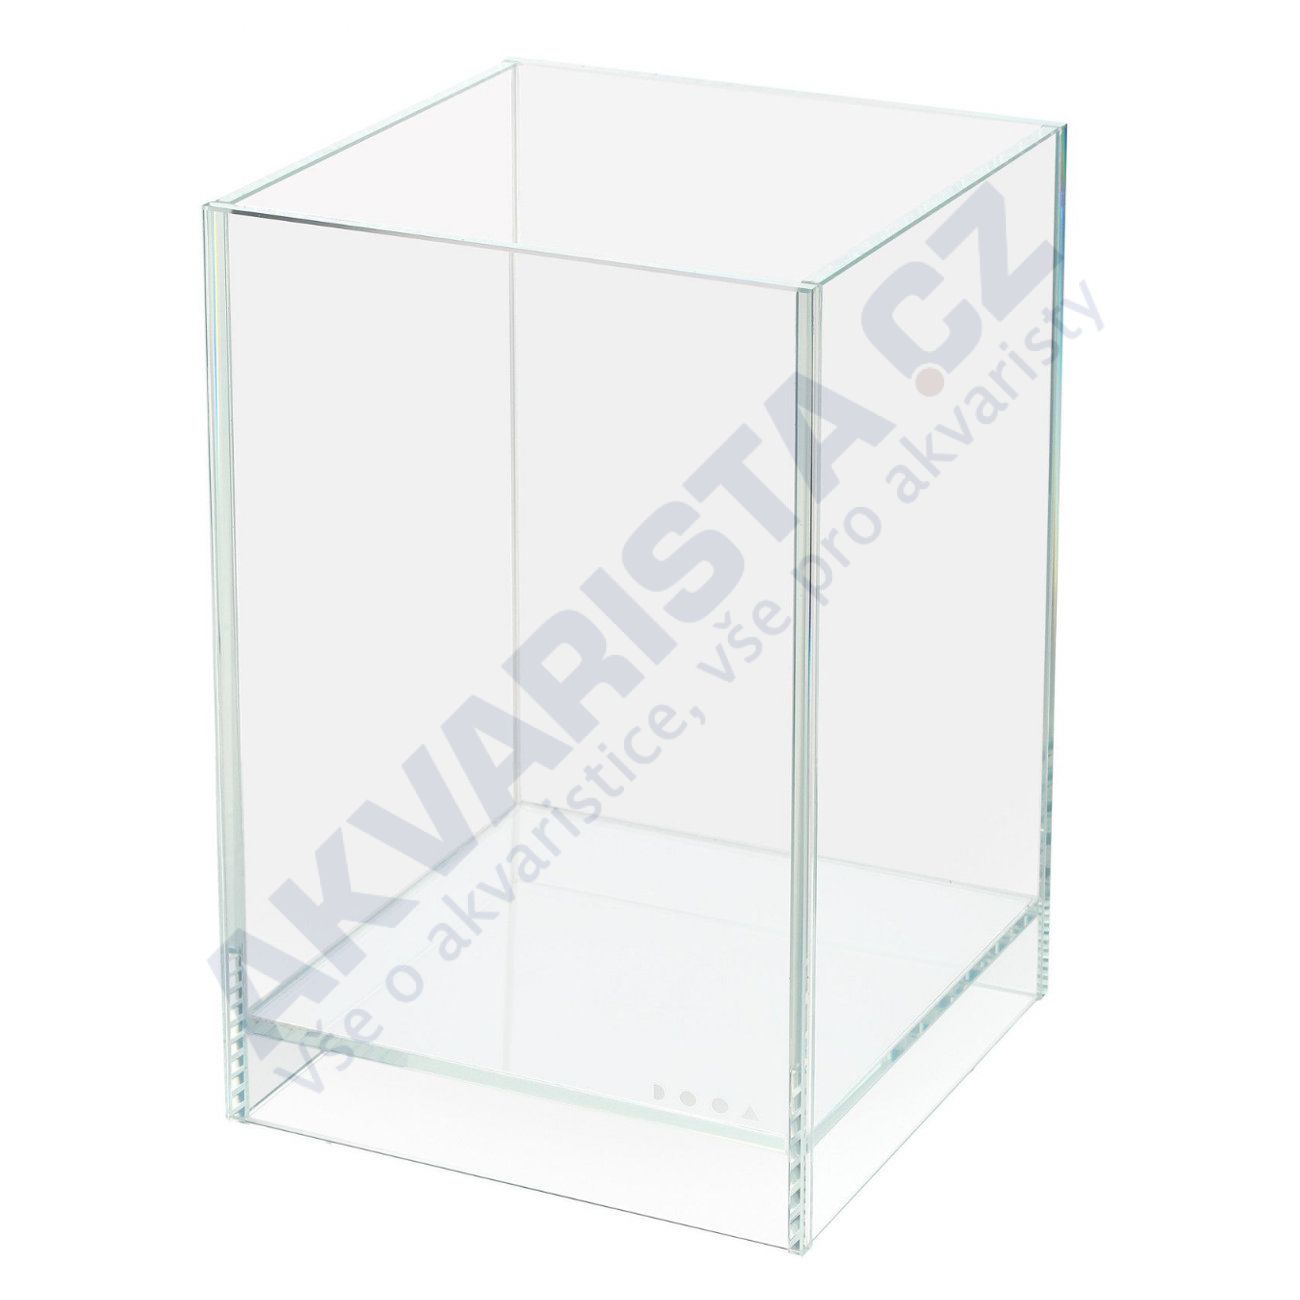 ADA DOOA Neo Glass AIR 30x30x45 cm